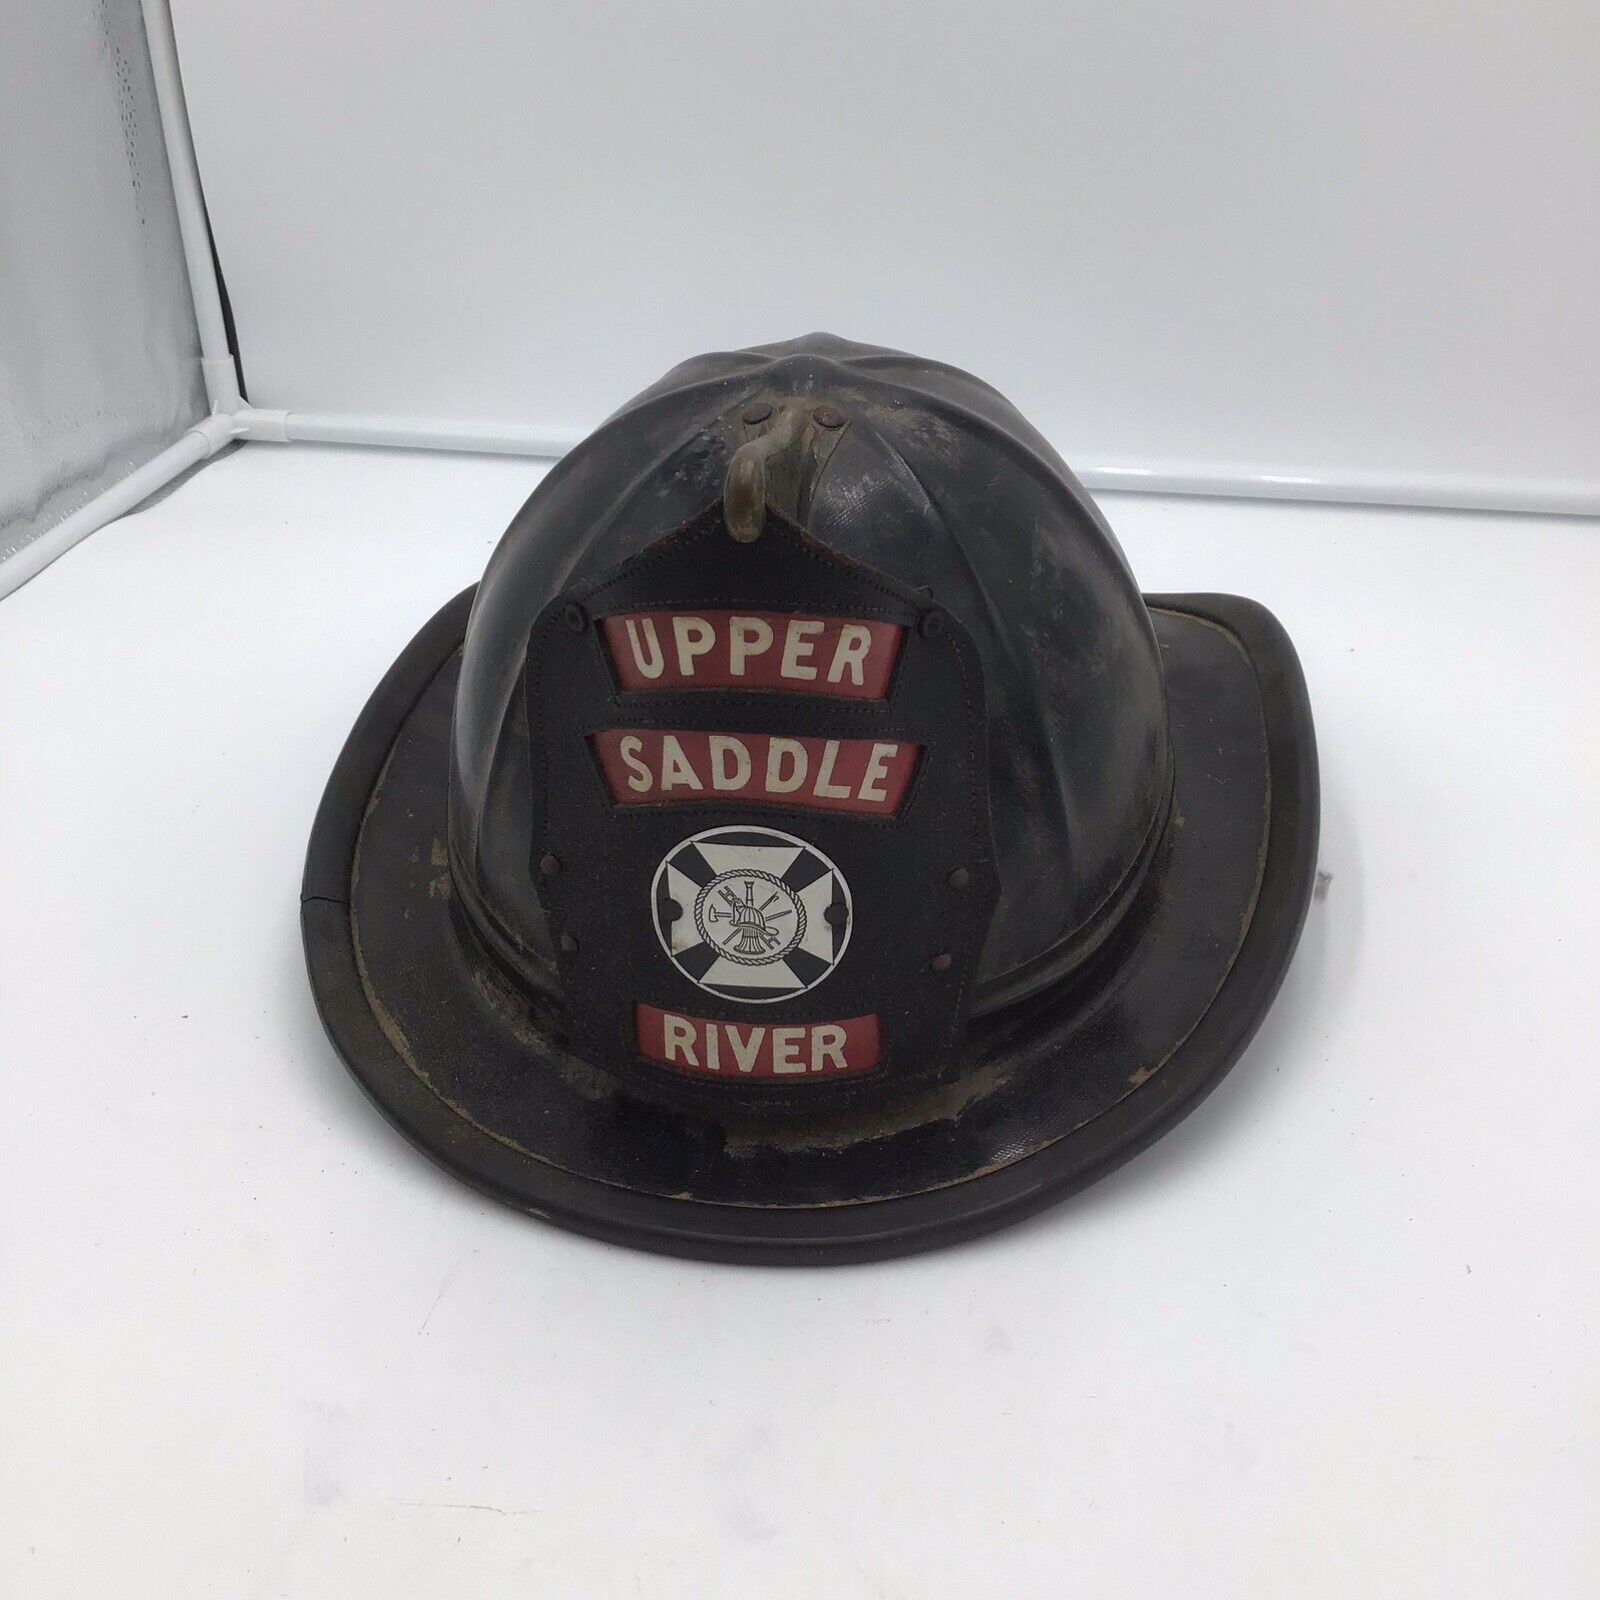 Vintage/Antique Leather Fire Helmet Upper Saddle River New Jersey